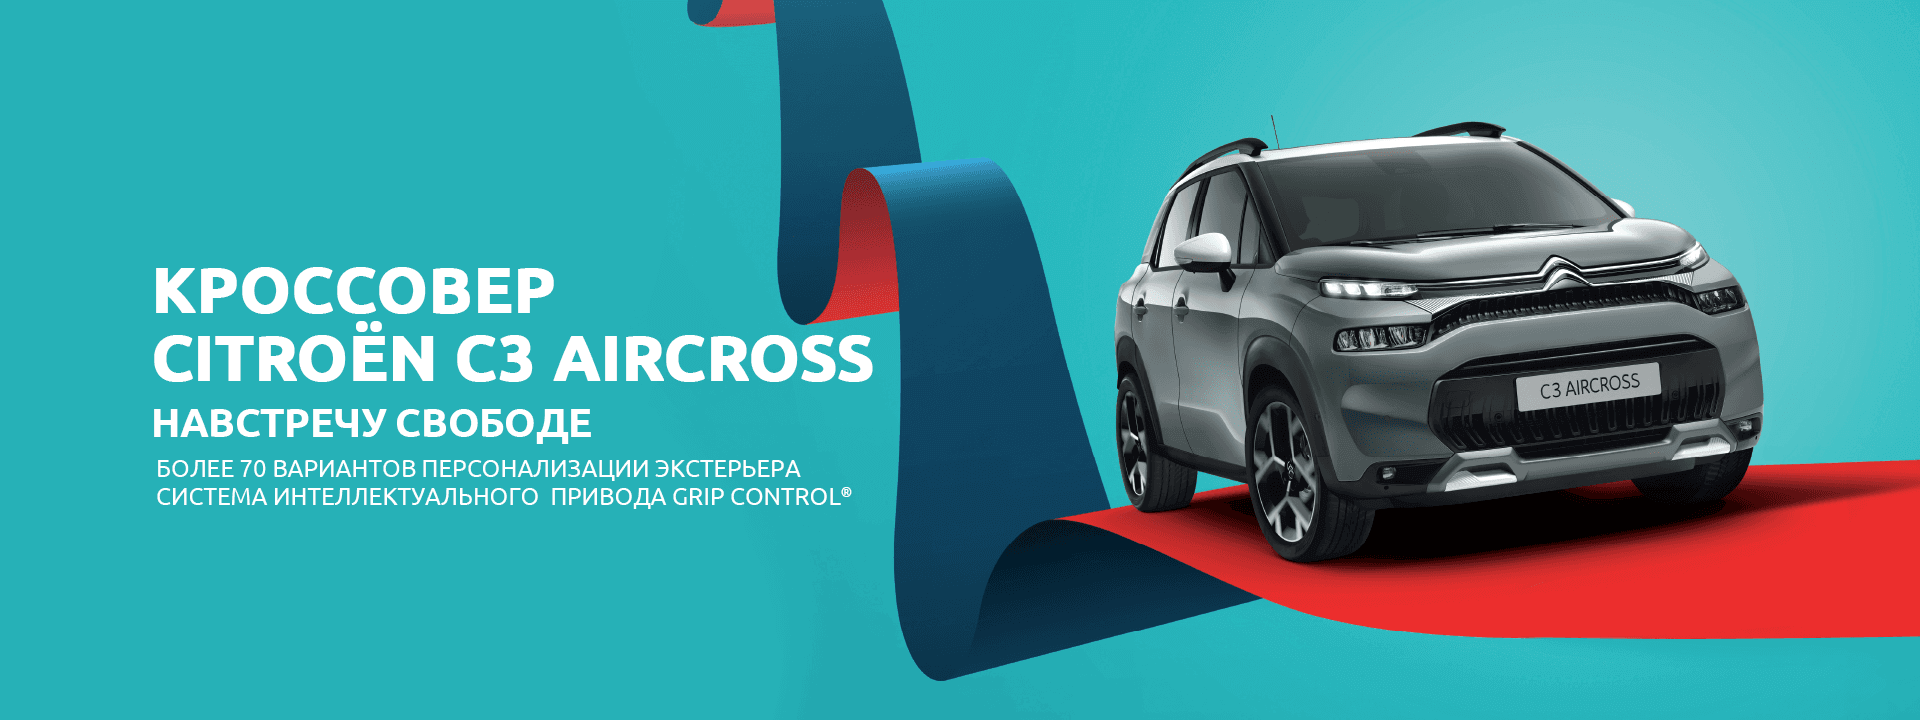 Новый кроссовер  CitroËn C3 Aircross